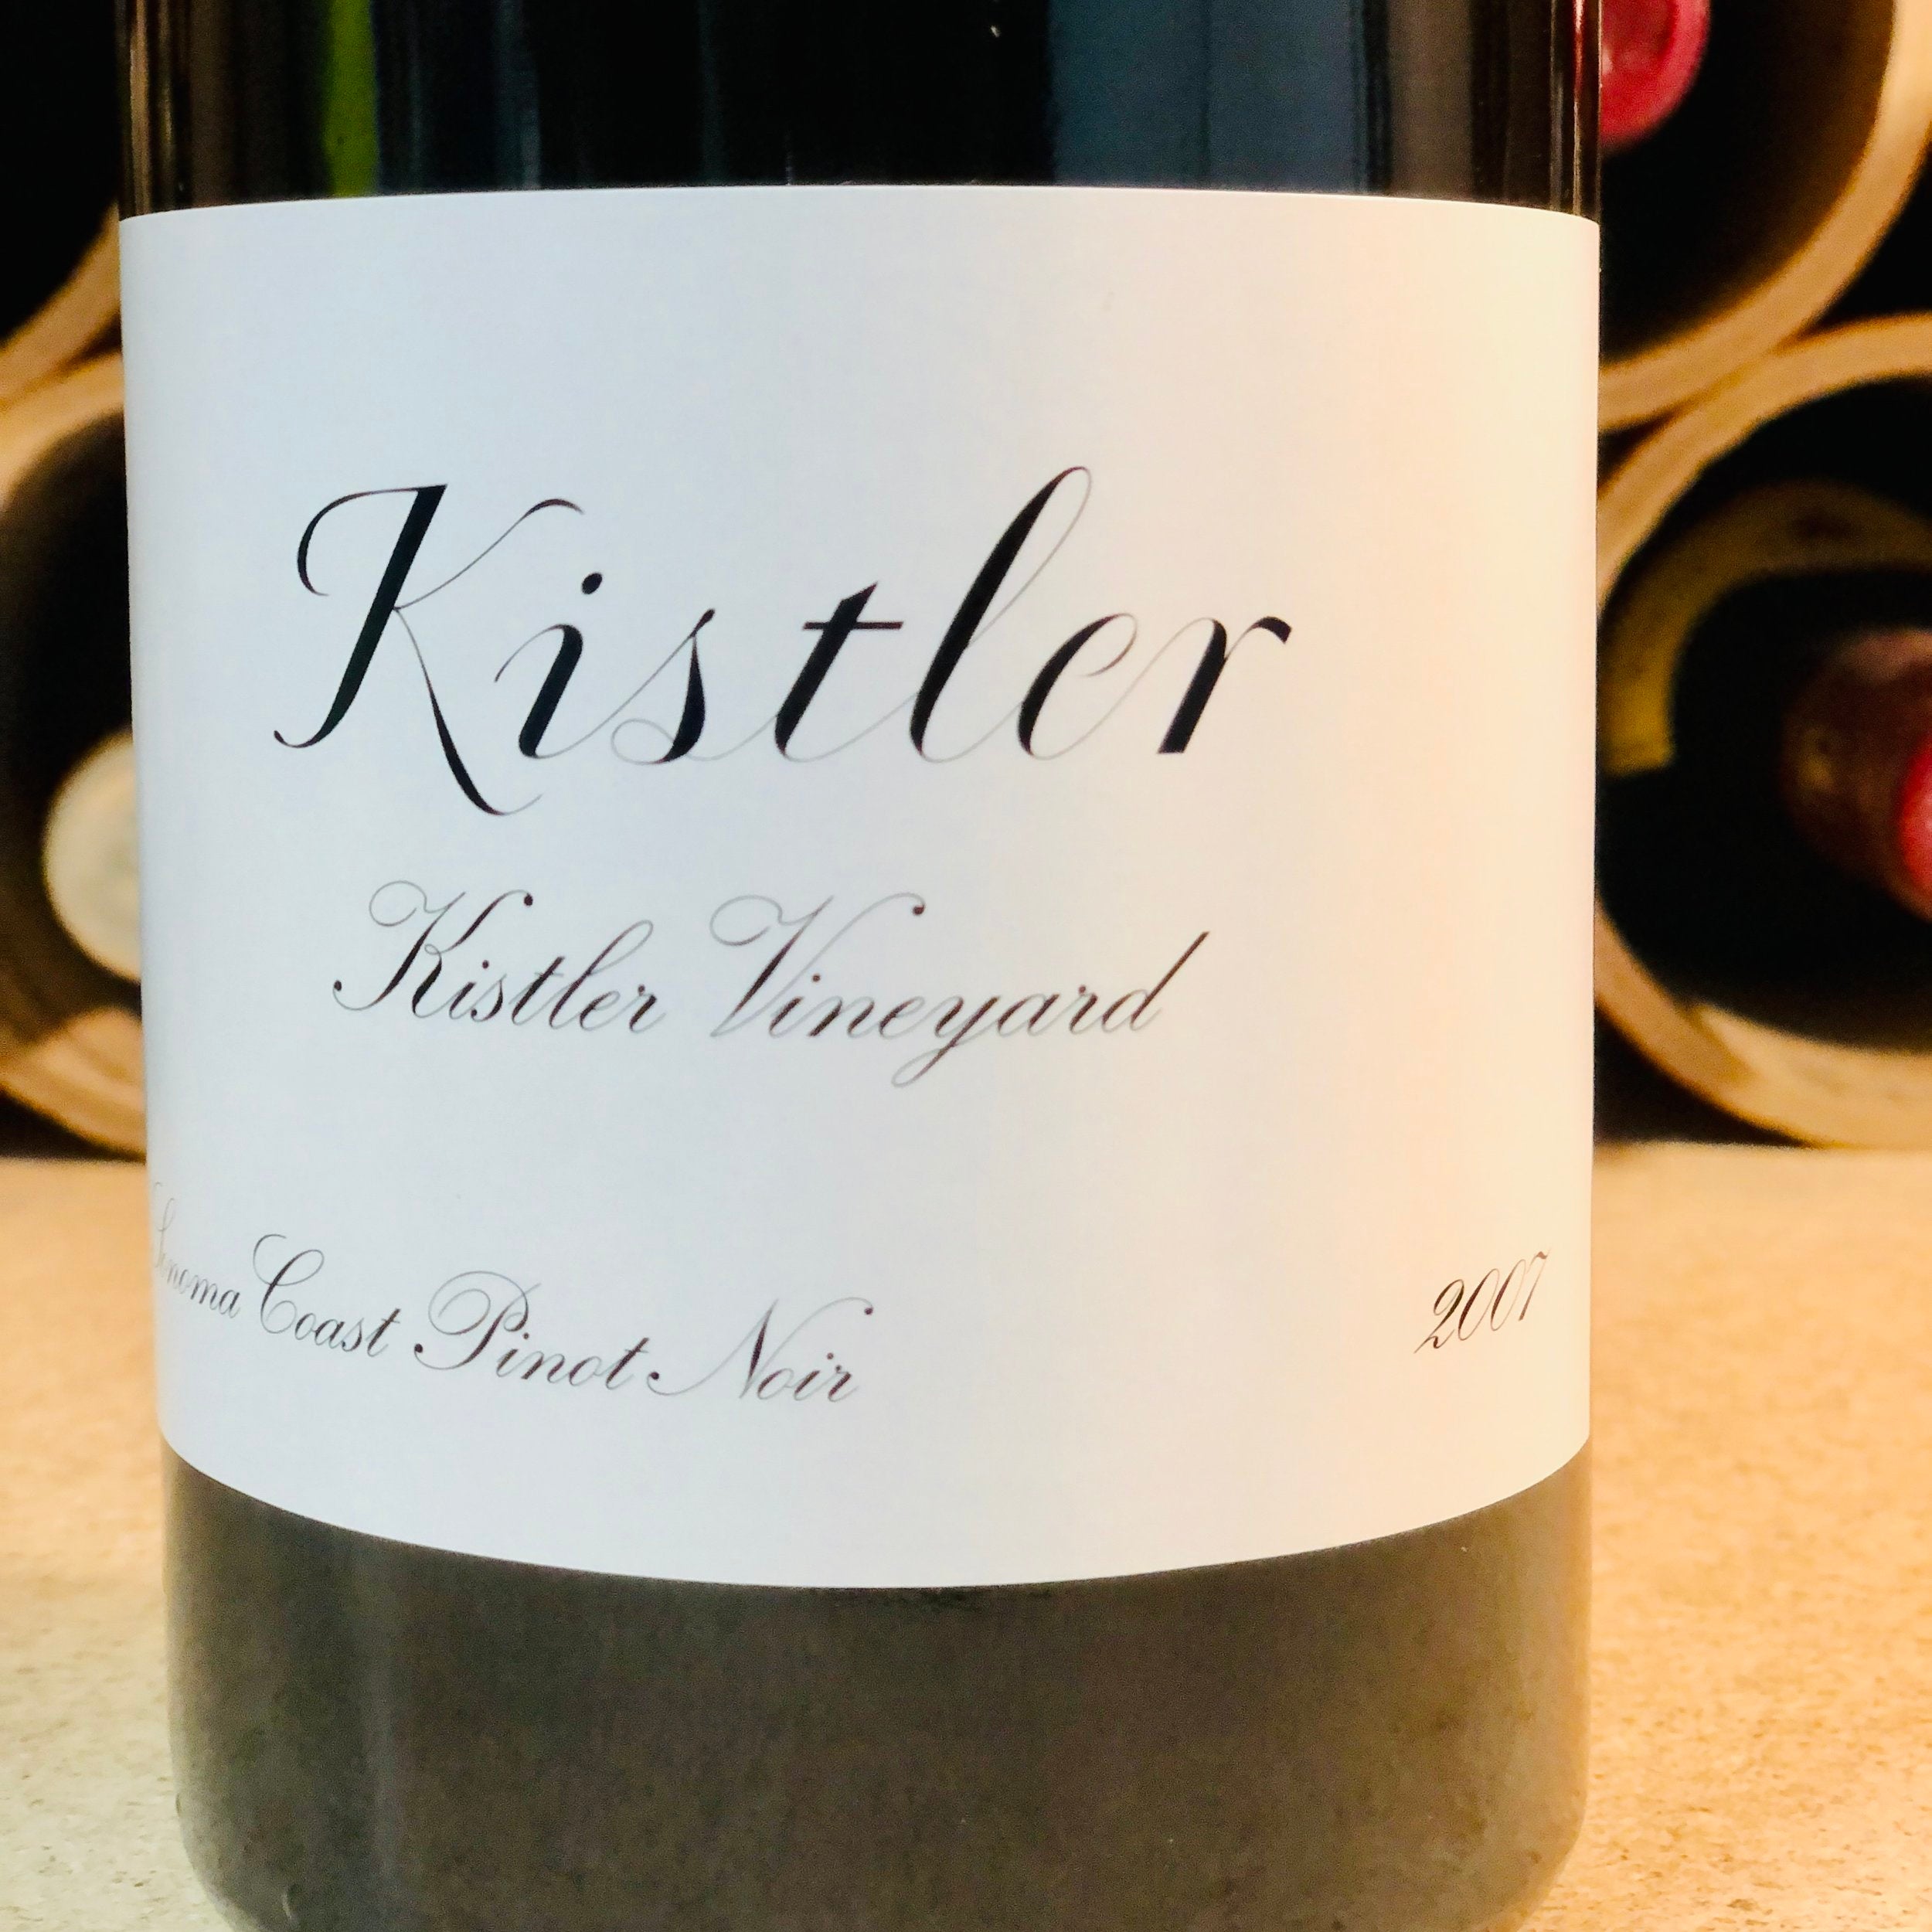 Kistler, Kistler Vineyard, Pinot Noir 2007